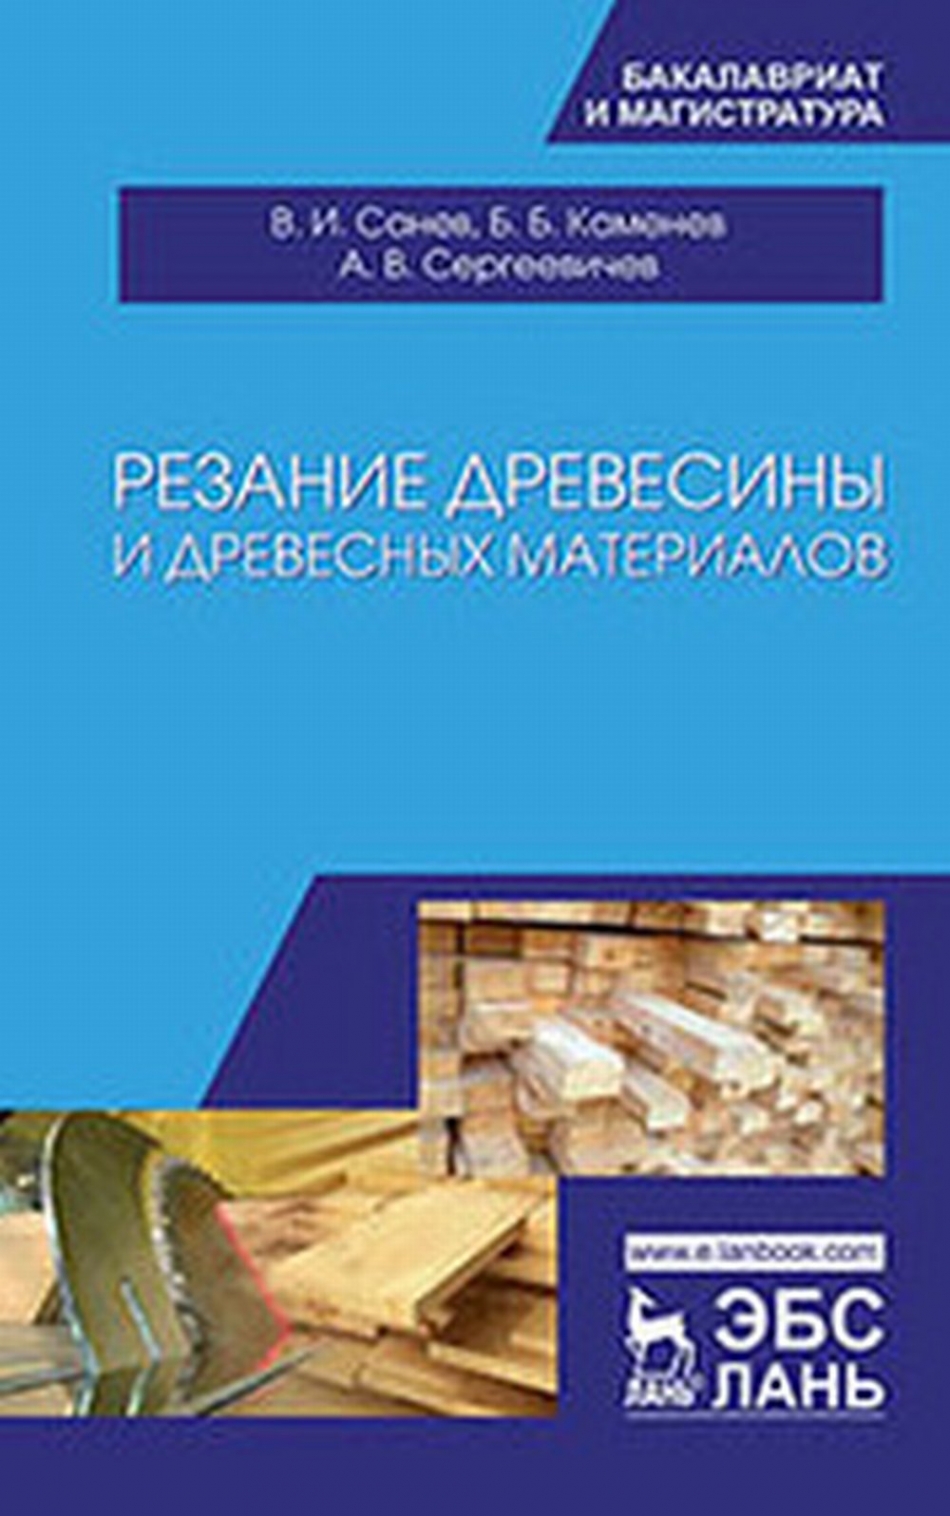 Санев В.И., Каменев Б.Б., Сергеевичев А.В. - Резание древесины и древесных материалов 